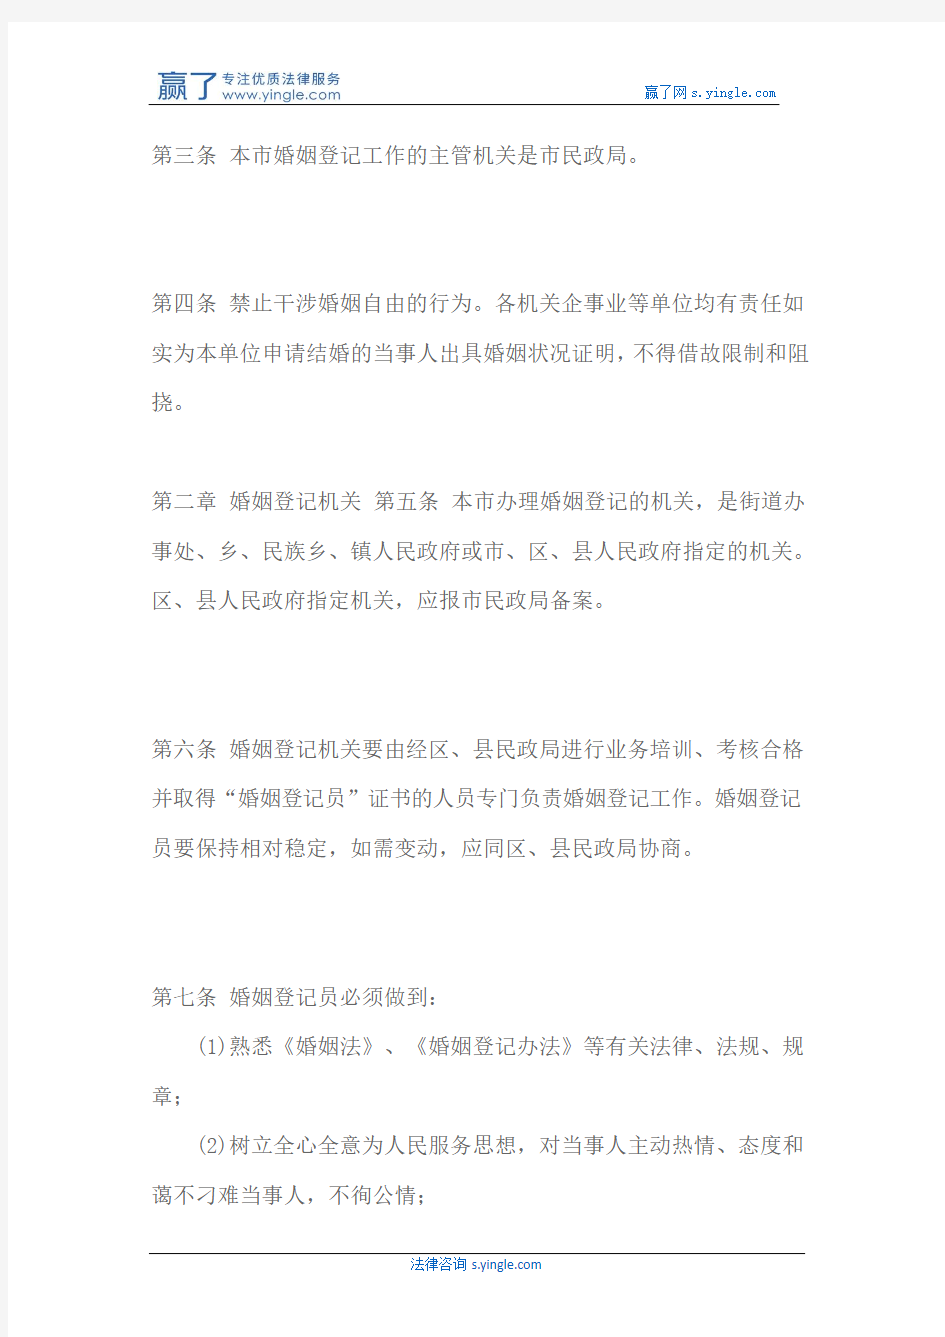 北京市婚姻登记办法实施细则